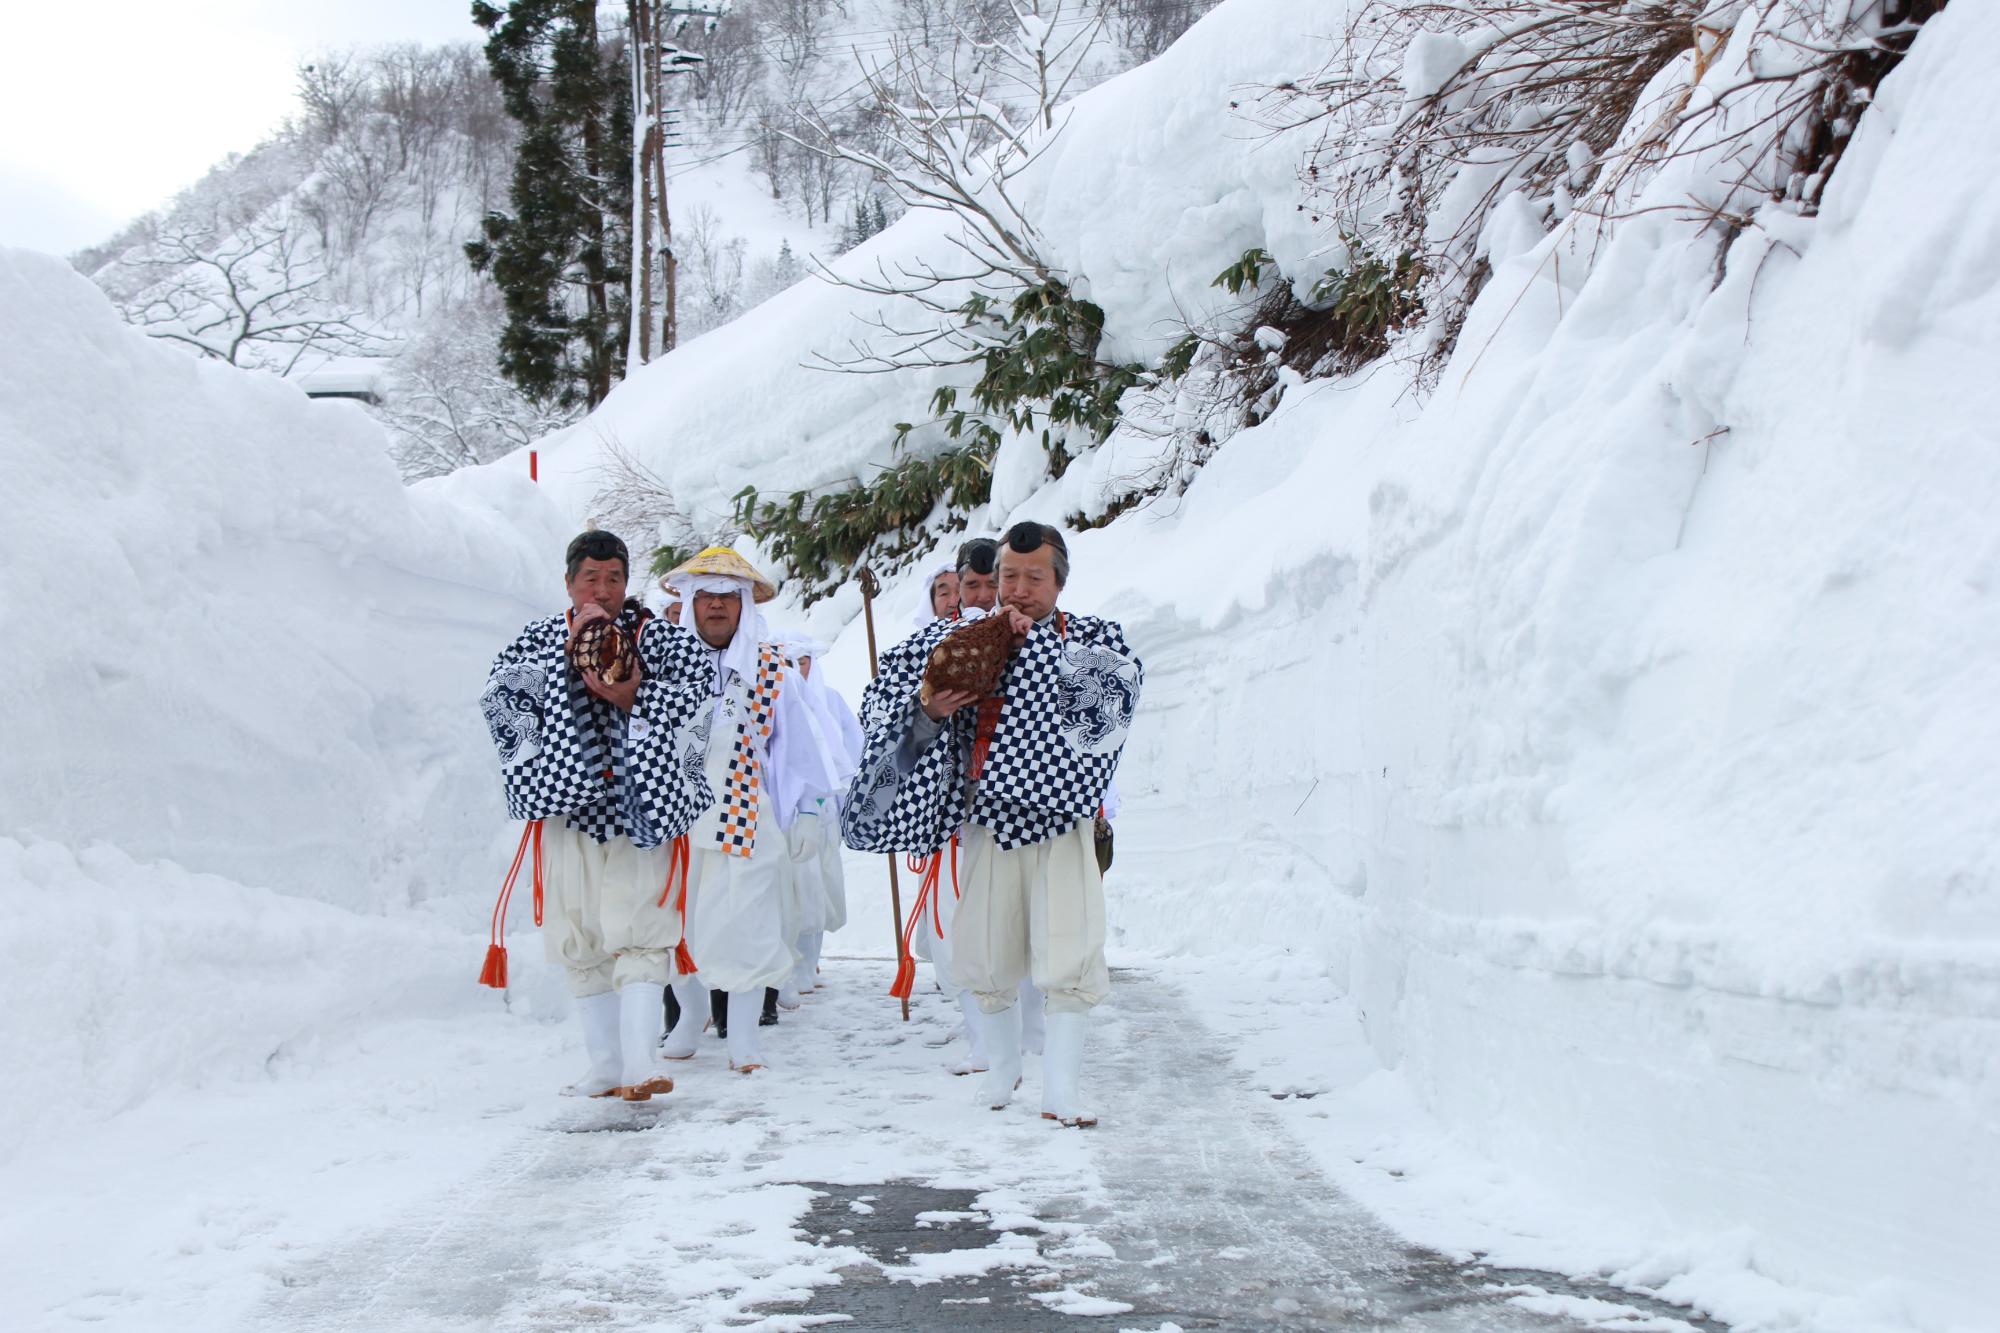 両脇に2メートルほどの雪壁の中、白装束に身を包んだ10人ほどの男性がほら貝をふきながら歩く様子。